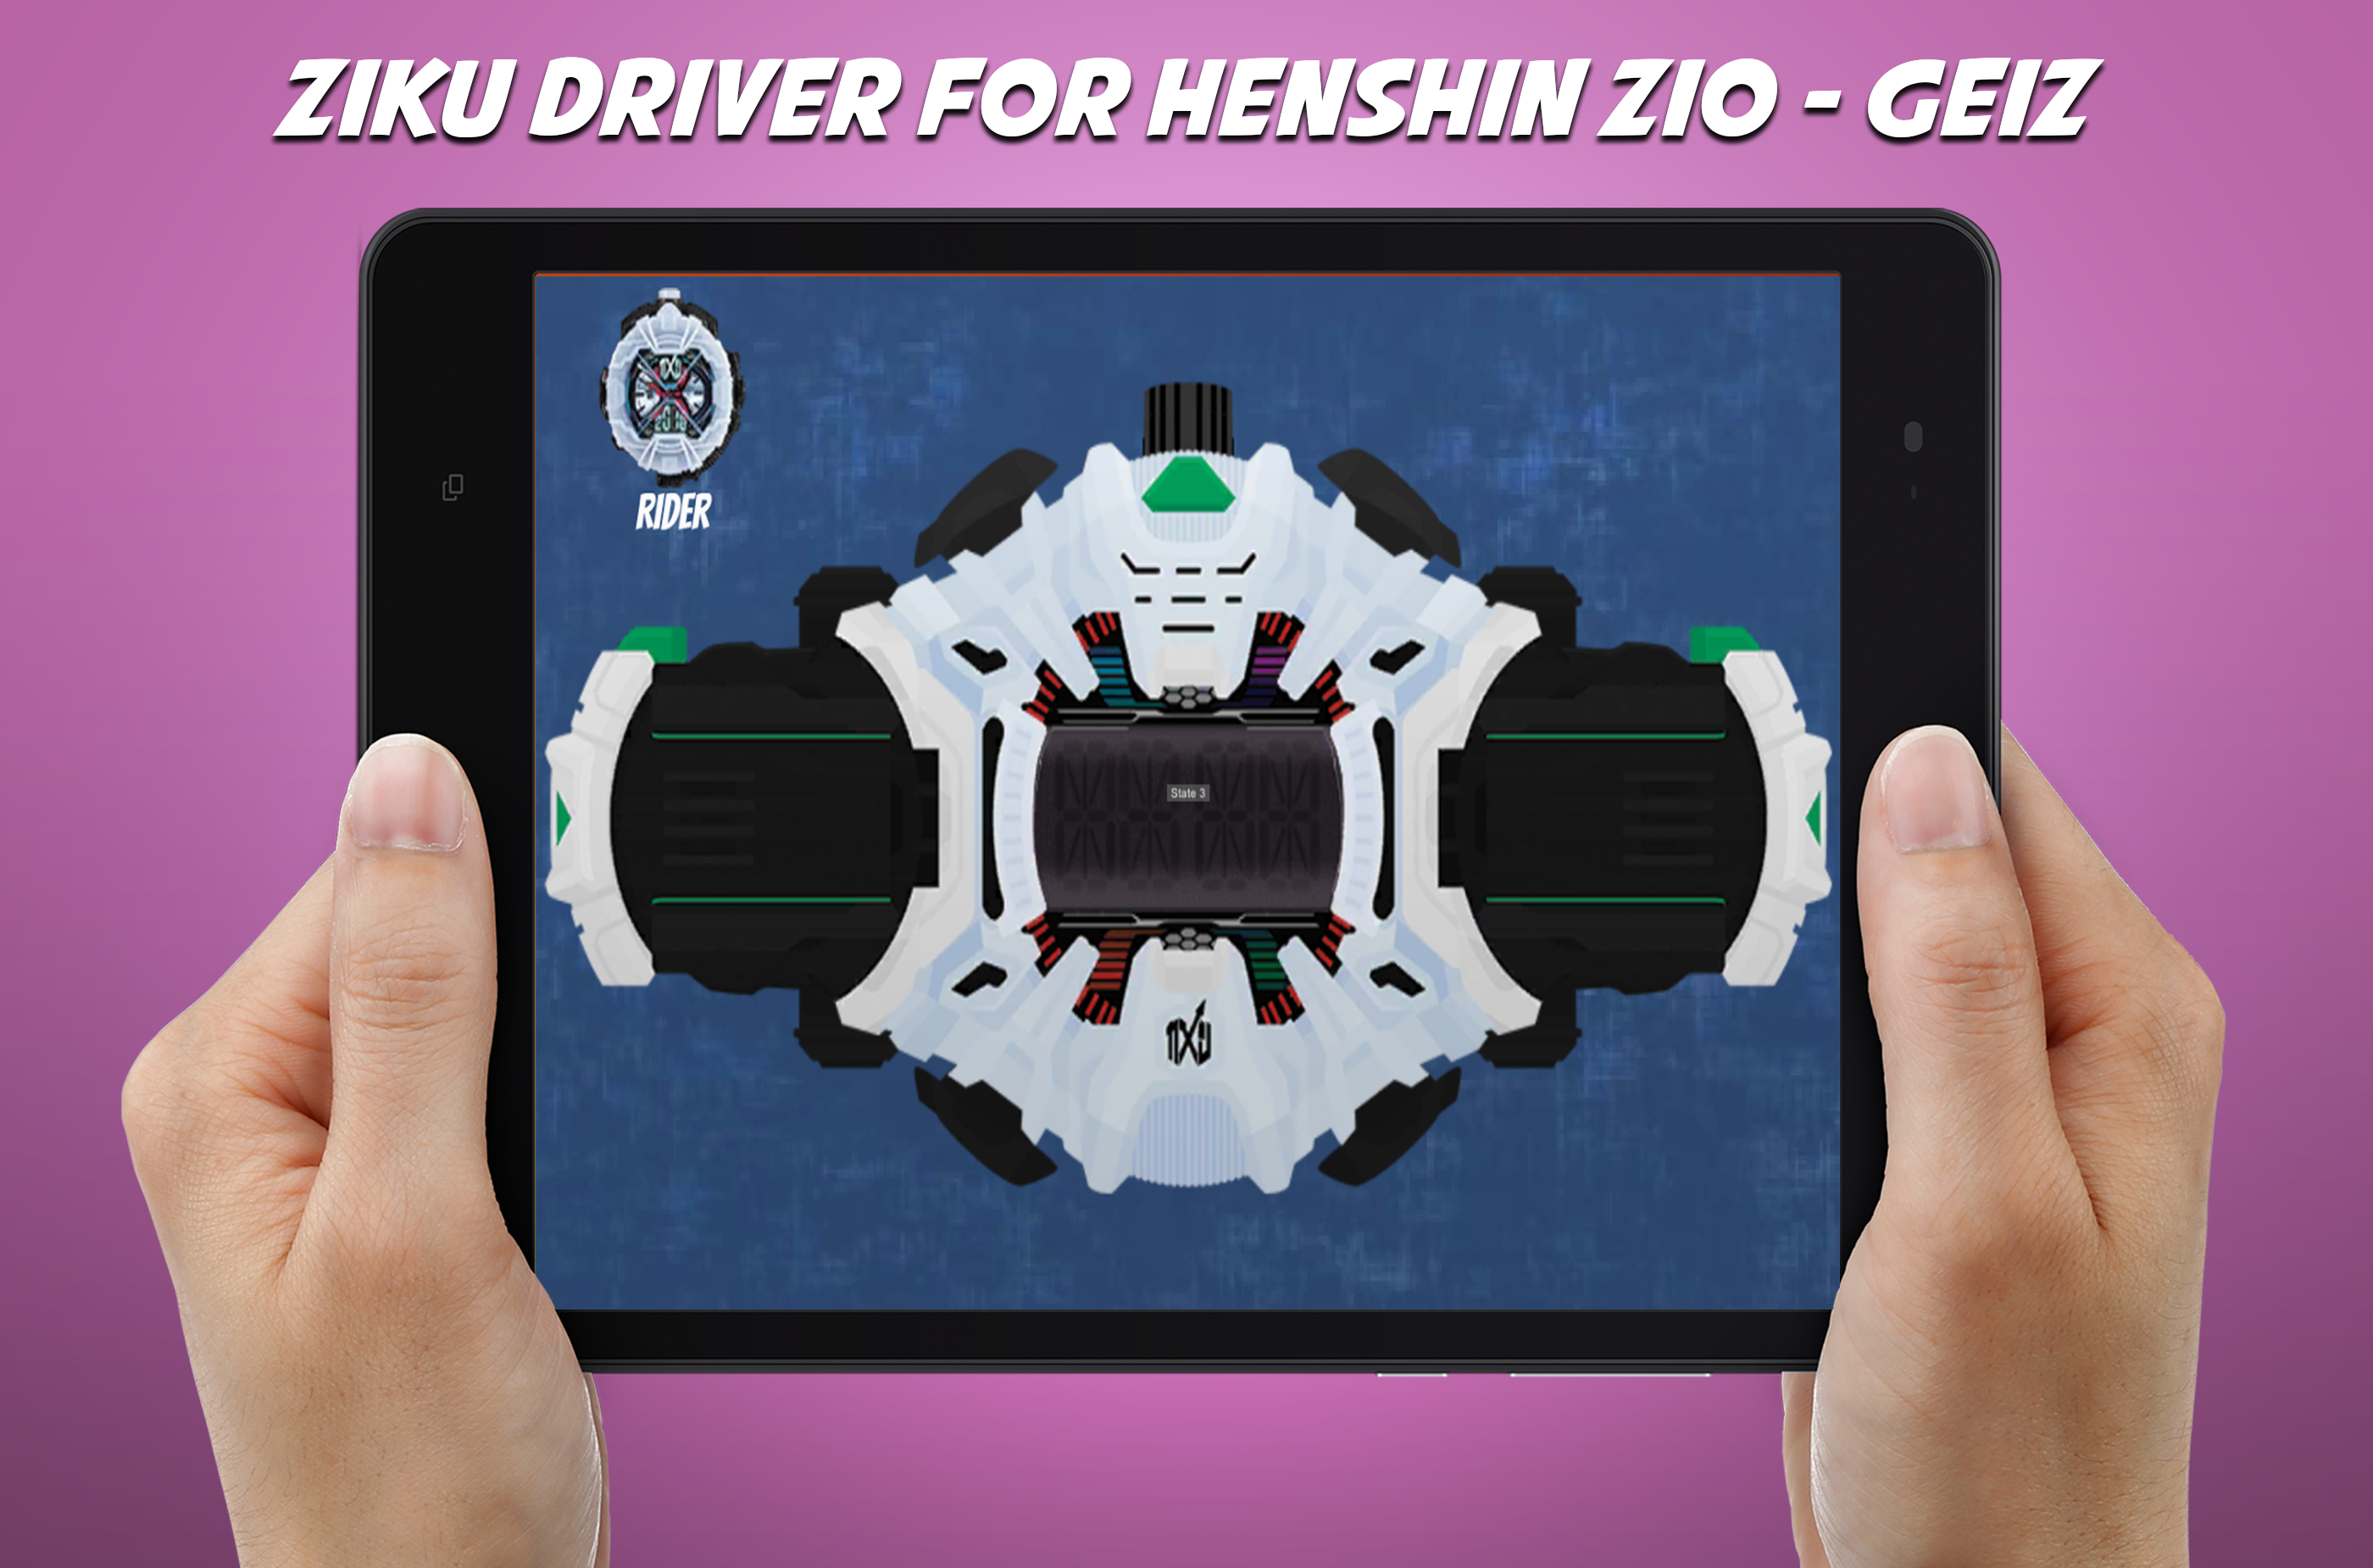 Screenshot 1 of កម្មវិធីបញ្ជា DX Ziku សម្រាប់ខ្សែក្រវ៉ាត់ henshin Zio - Geiz 2.0